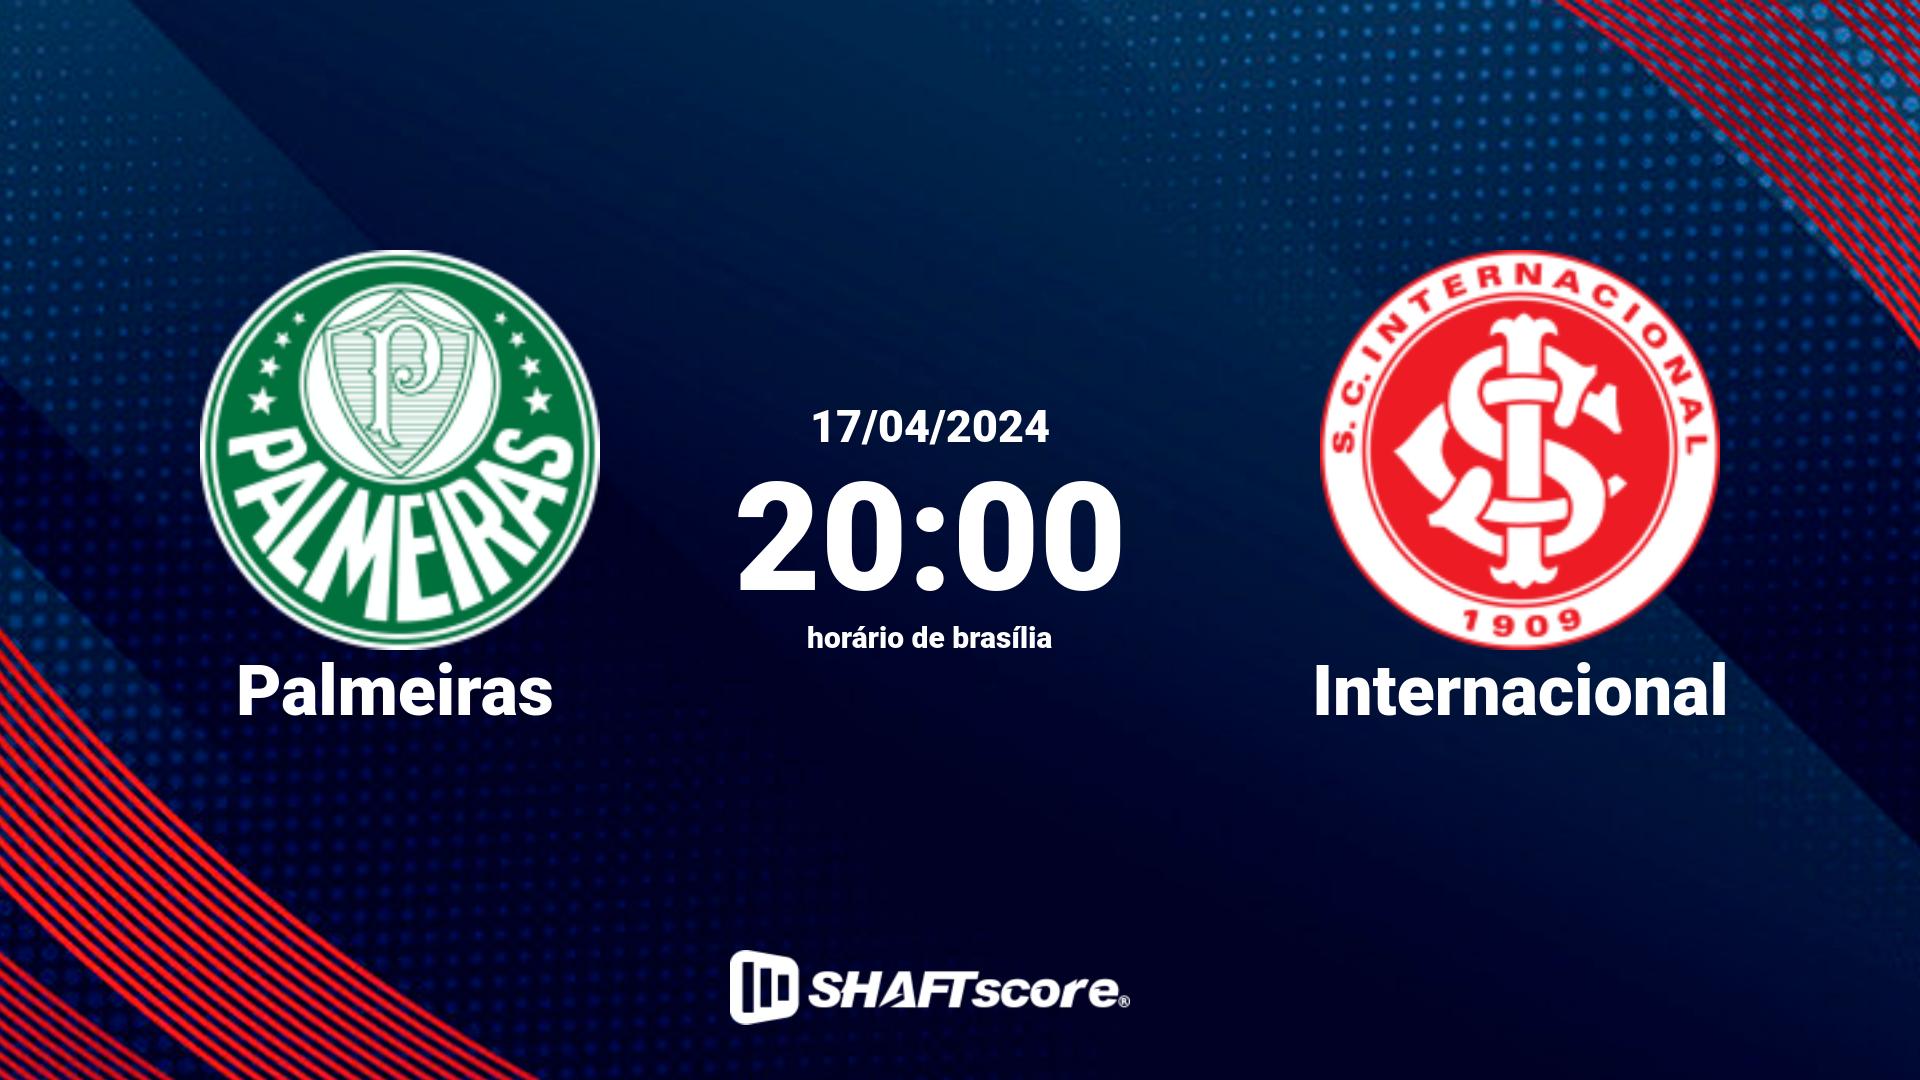 Estatísticas do jogo Palmeiras vs Internacional 17.04 20:00